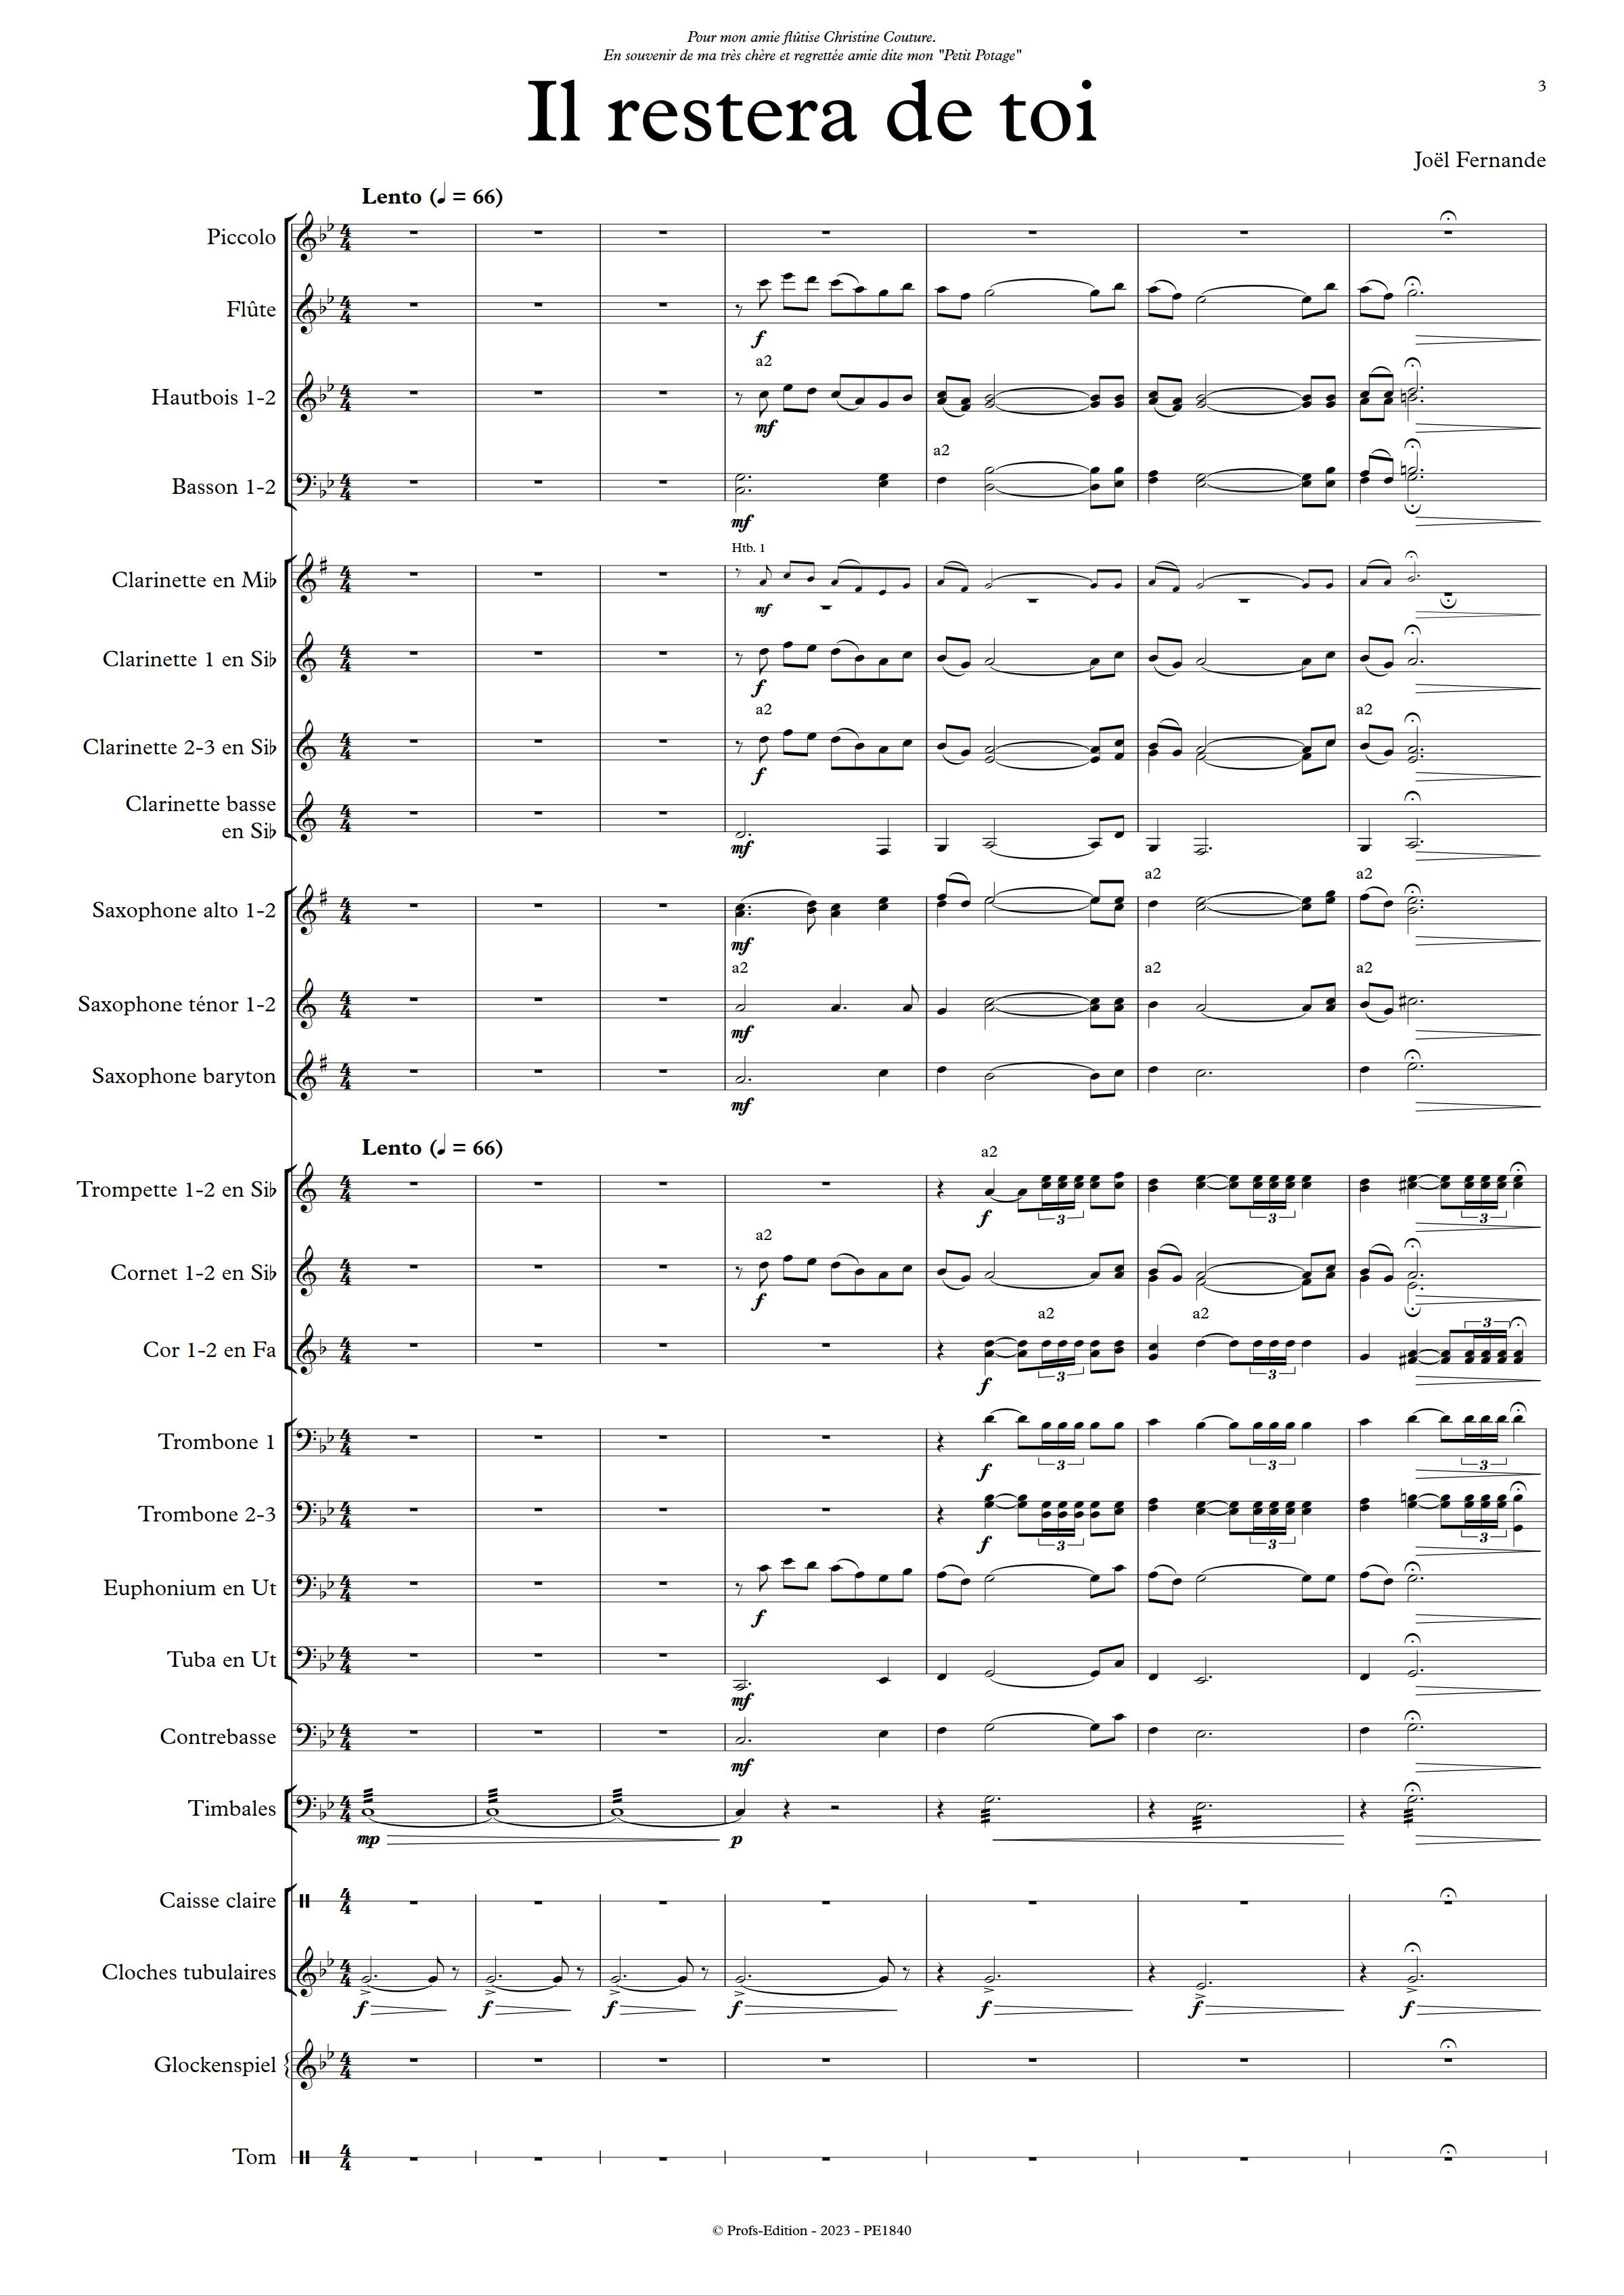 Il restera de toi - Orchestre d'harmonie - FERNANDE J. - app.scorescoreTitle